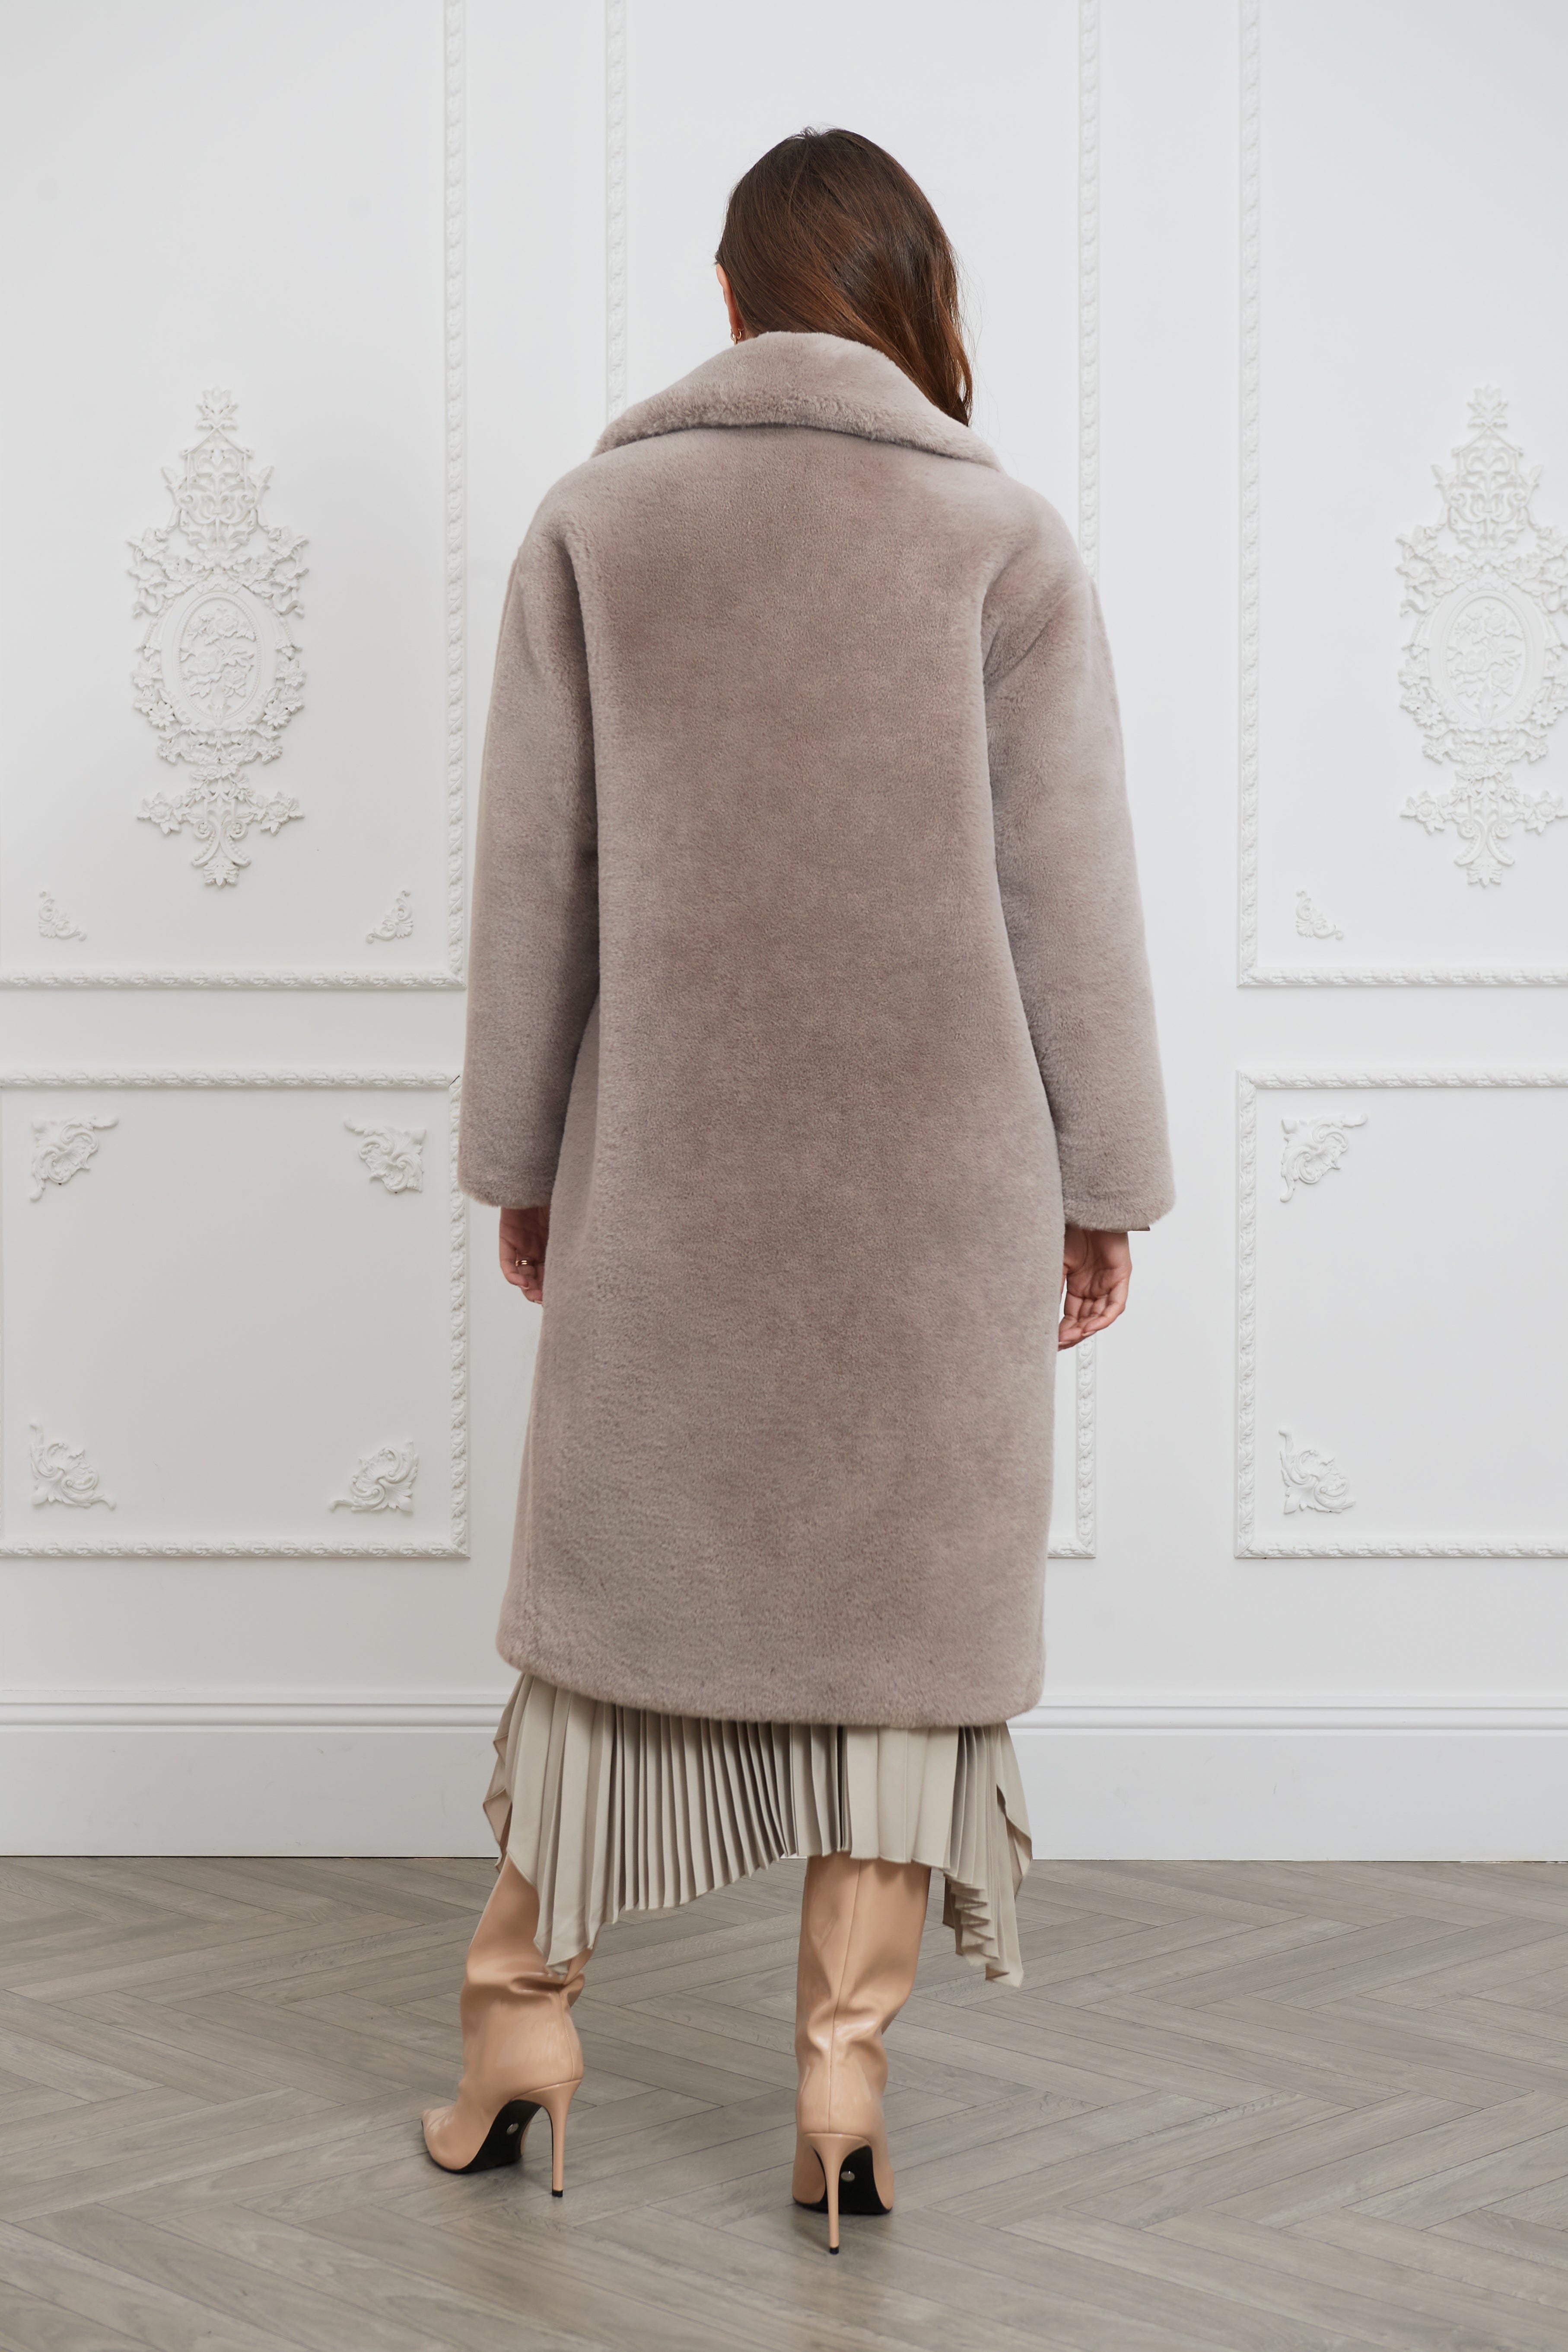 Issy London Greta Luxe Longline Faux Fur Coat Mink Grey